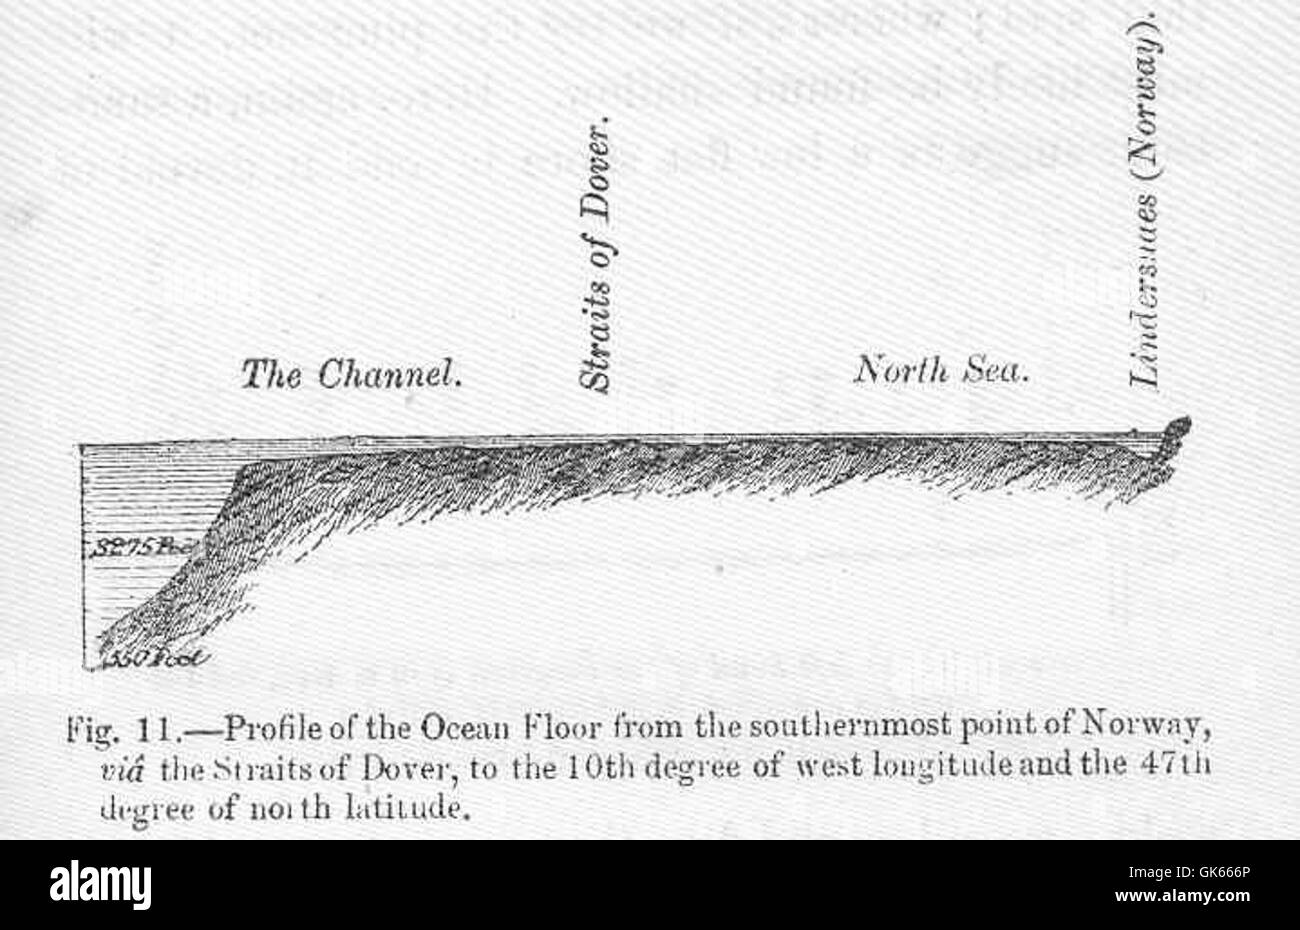 49949 Profil de l'océan de l'extrême sud de la Norvège, via le détroit de Douvres, à la 10e degré de longitude ouest Banque D'Images